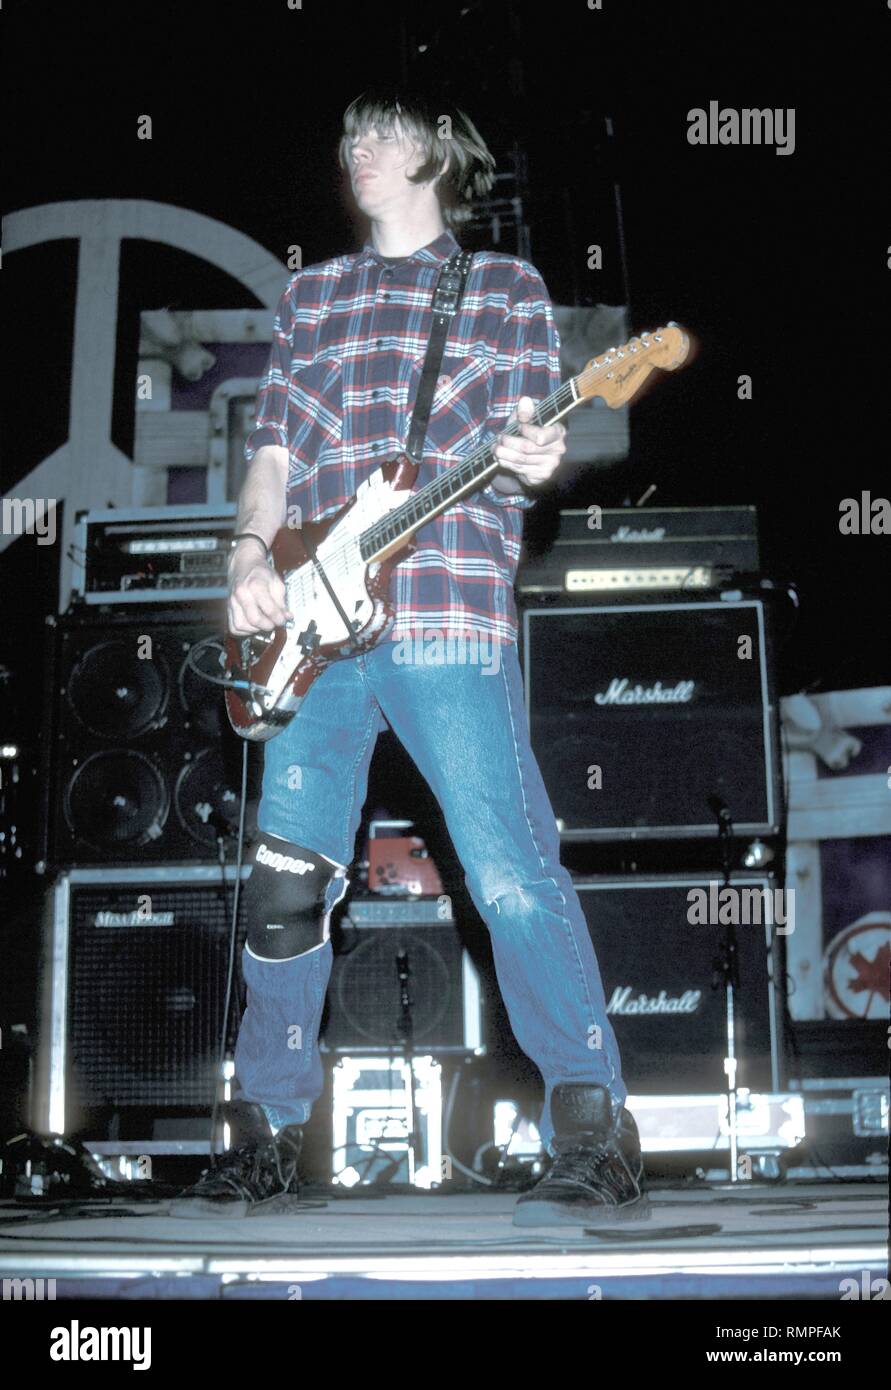 Sänger, Songwriter und Gitarrist Thurston Moore der Alternative Rock Band Sonic Youth ist dargestellt auf der Bühne während einer "live"-Konzert aussehen. Stockfoto